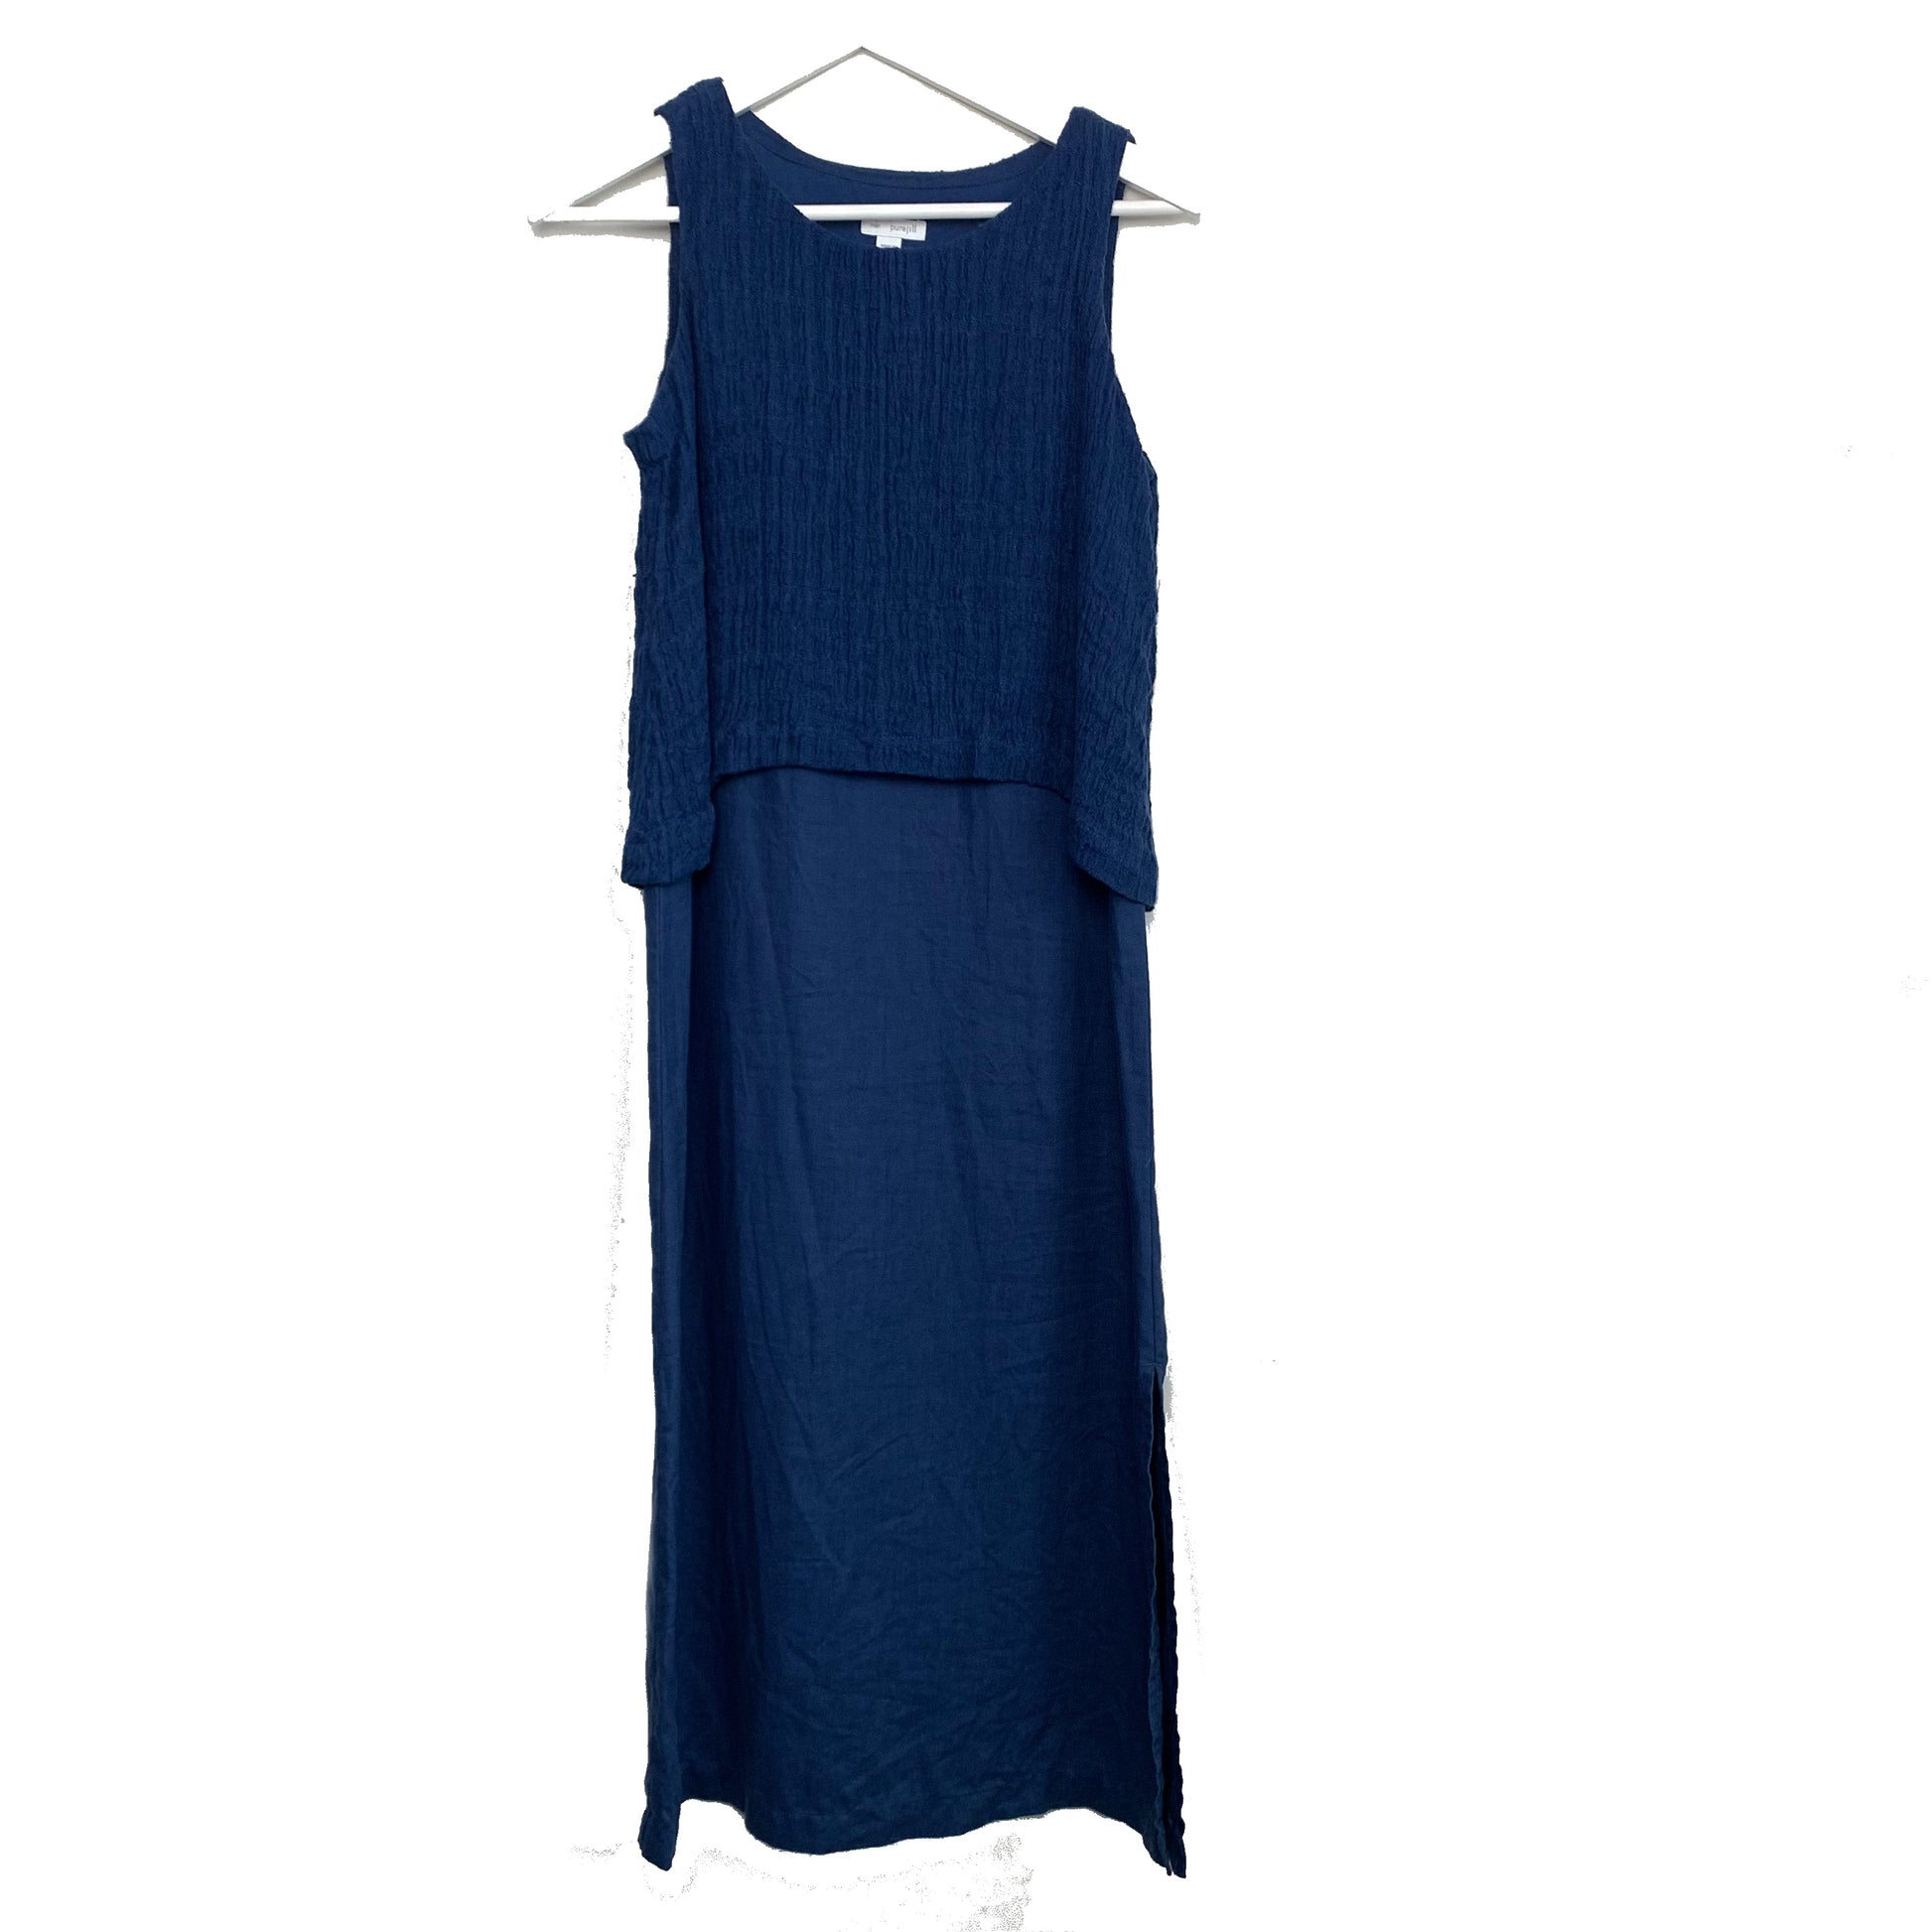 NEW J.Jill Small Blue Tank Seamed Sleeveless Dress with Pockets Pima Cotton